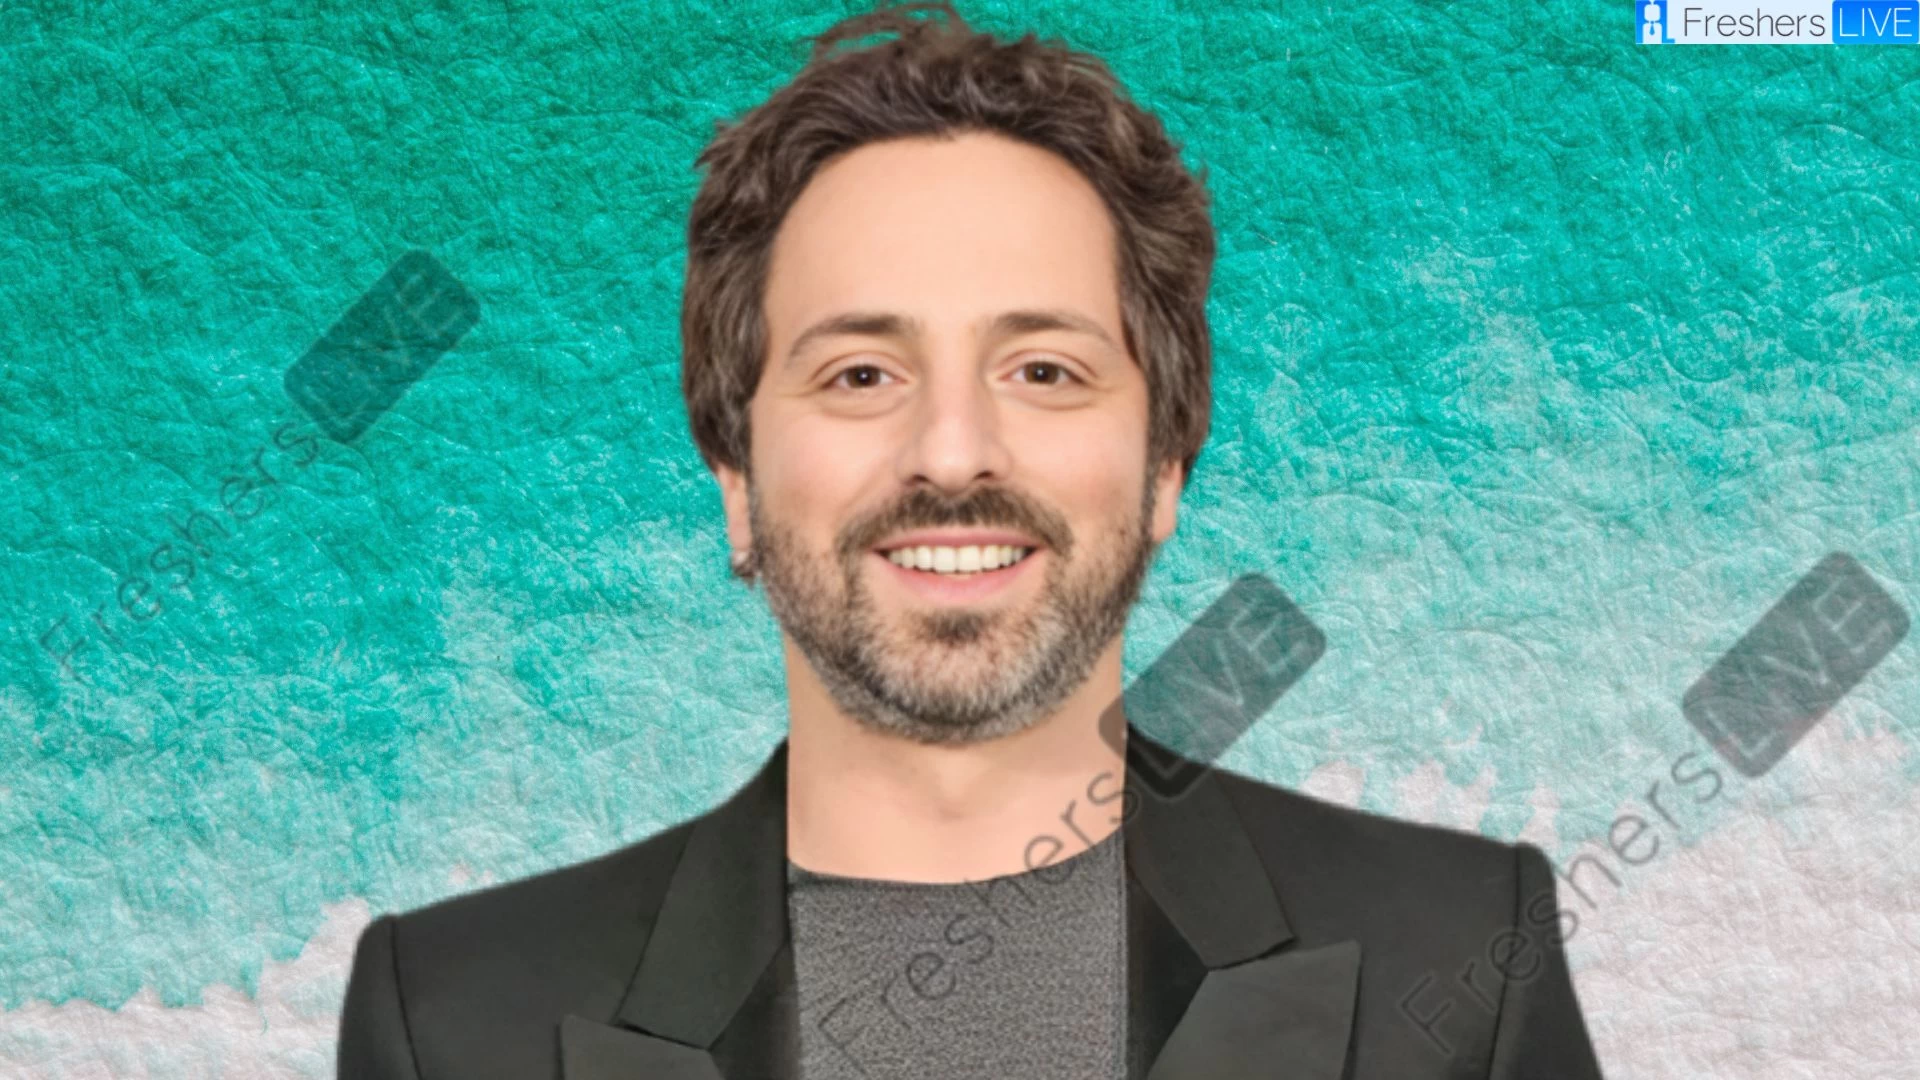 Etnia de Sergey Brin, ¿Cuál es la etnia de Sergey Brin?